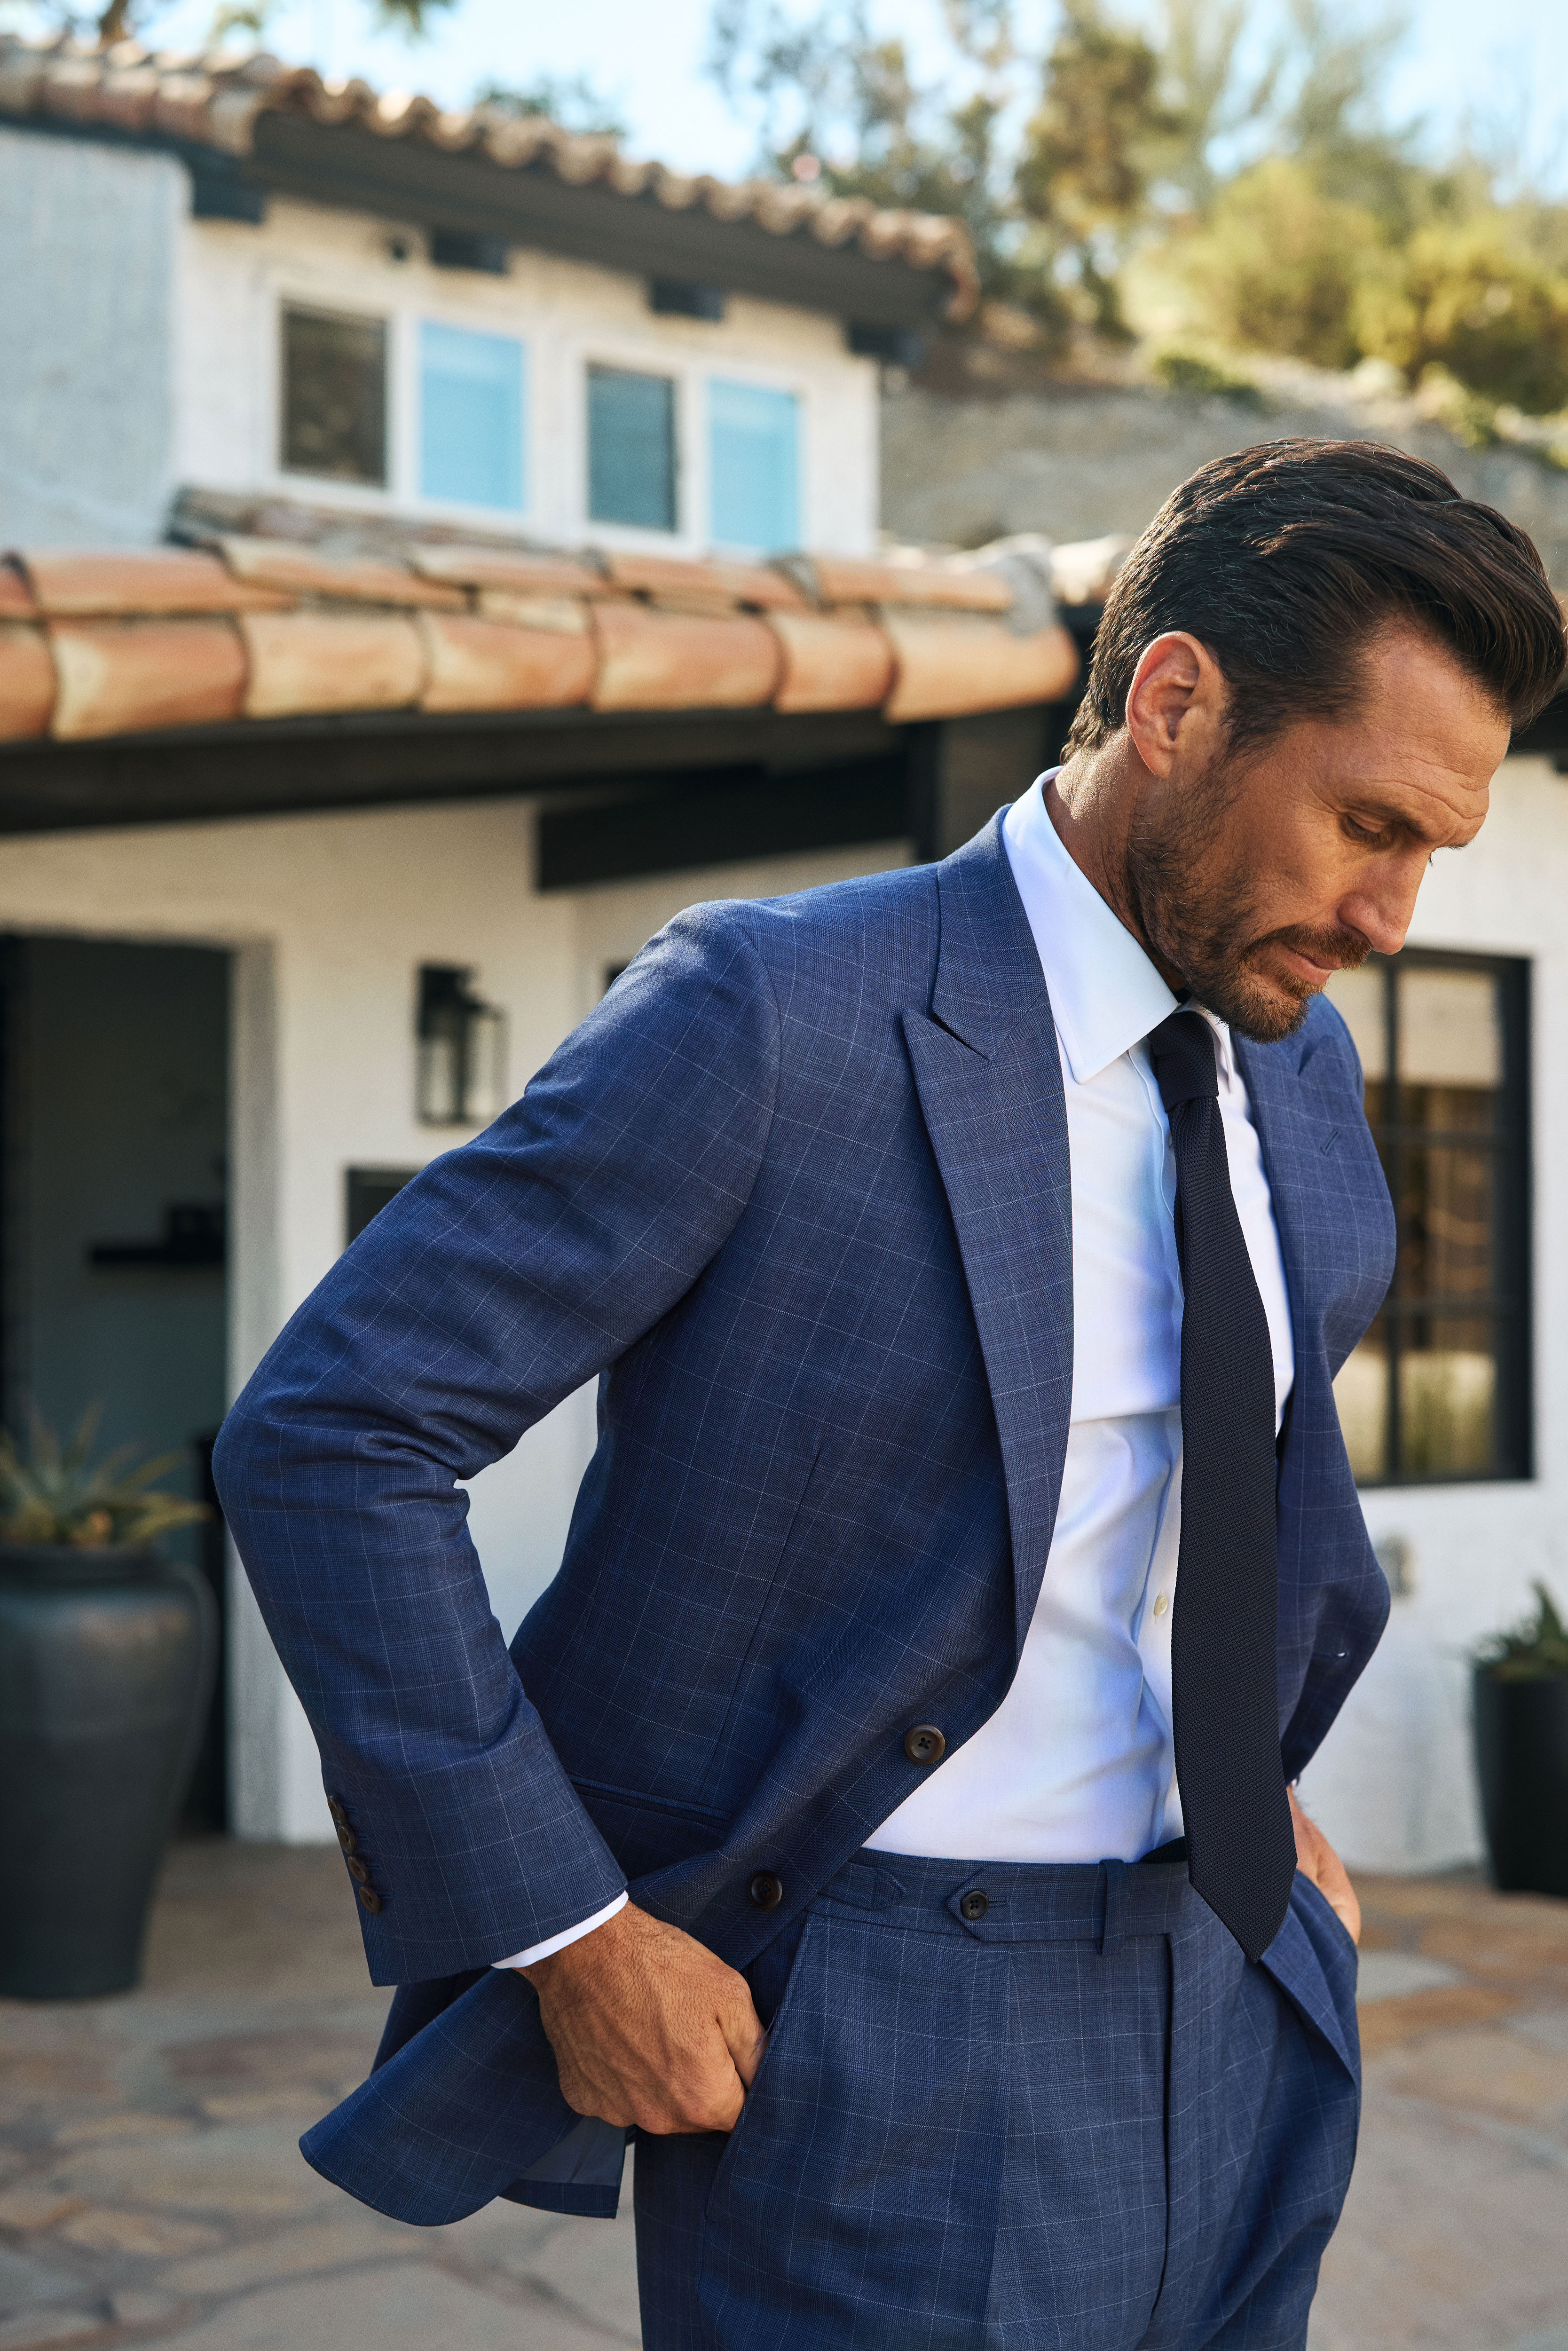 Men's Suit Colors - Blue Vs. Gray Vs. Black Suits - Which Is The Most  Versatile Suit?